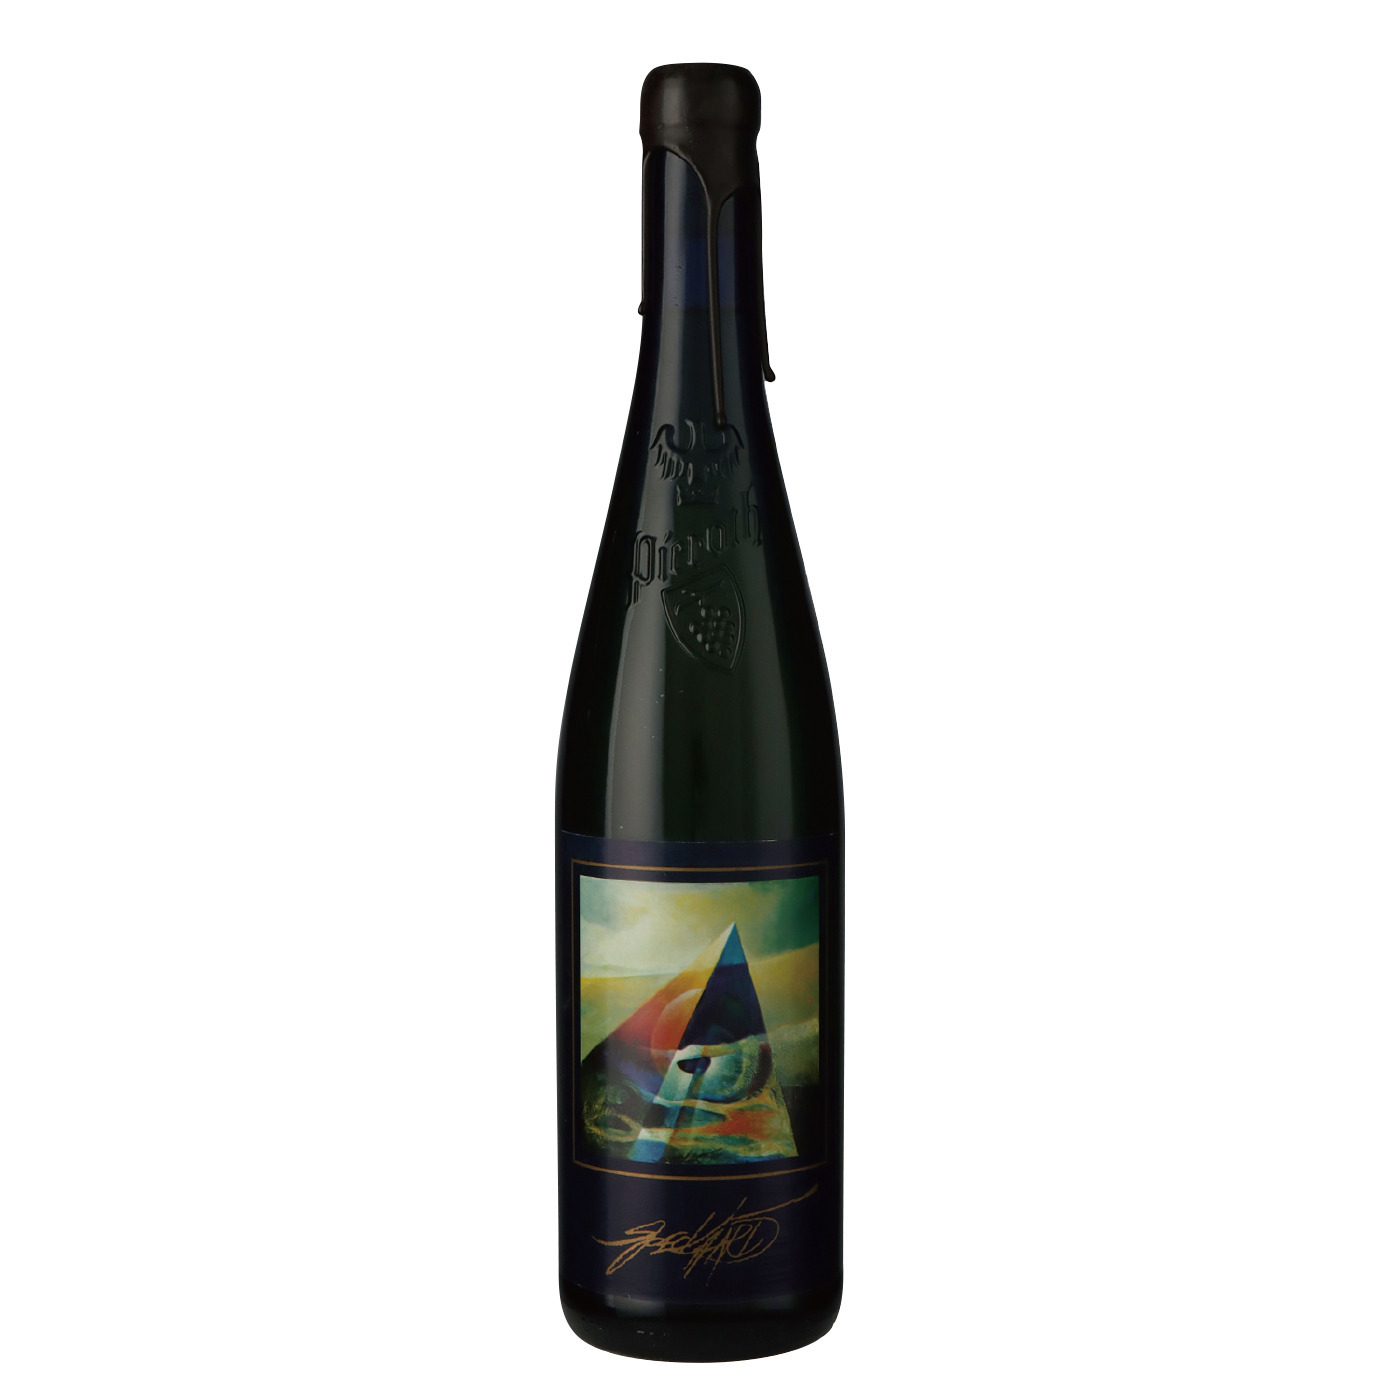 ブルクライヤー・シュロスカペレ アウスレーゼ (1993) ピーロート・ジャパン ハイエンド・高級ワイン通販